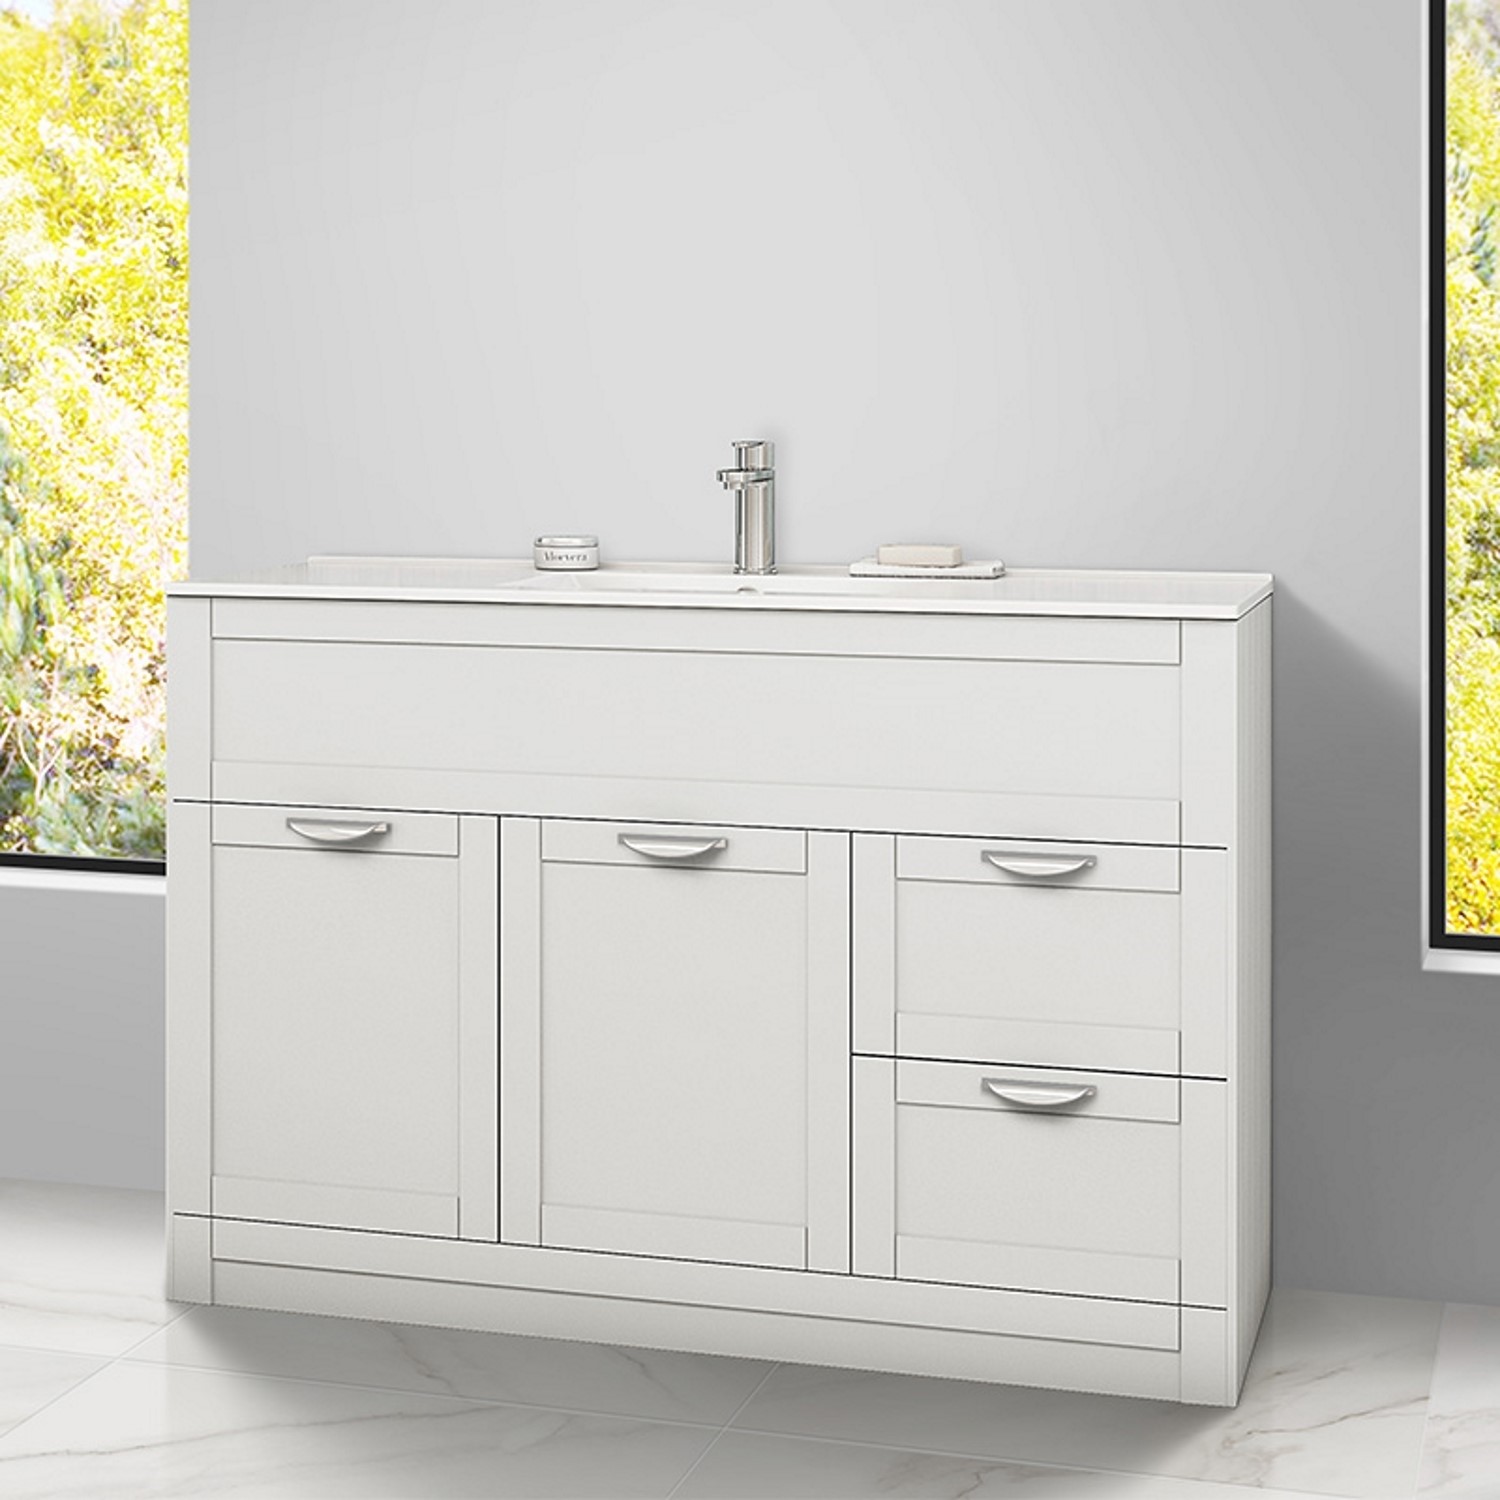 1000mm Vanity Basin Unit White Modern, Vanity Bathroom Units 1000mm